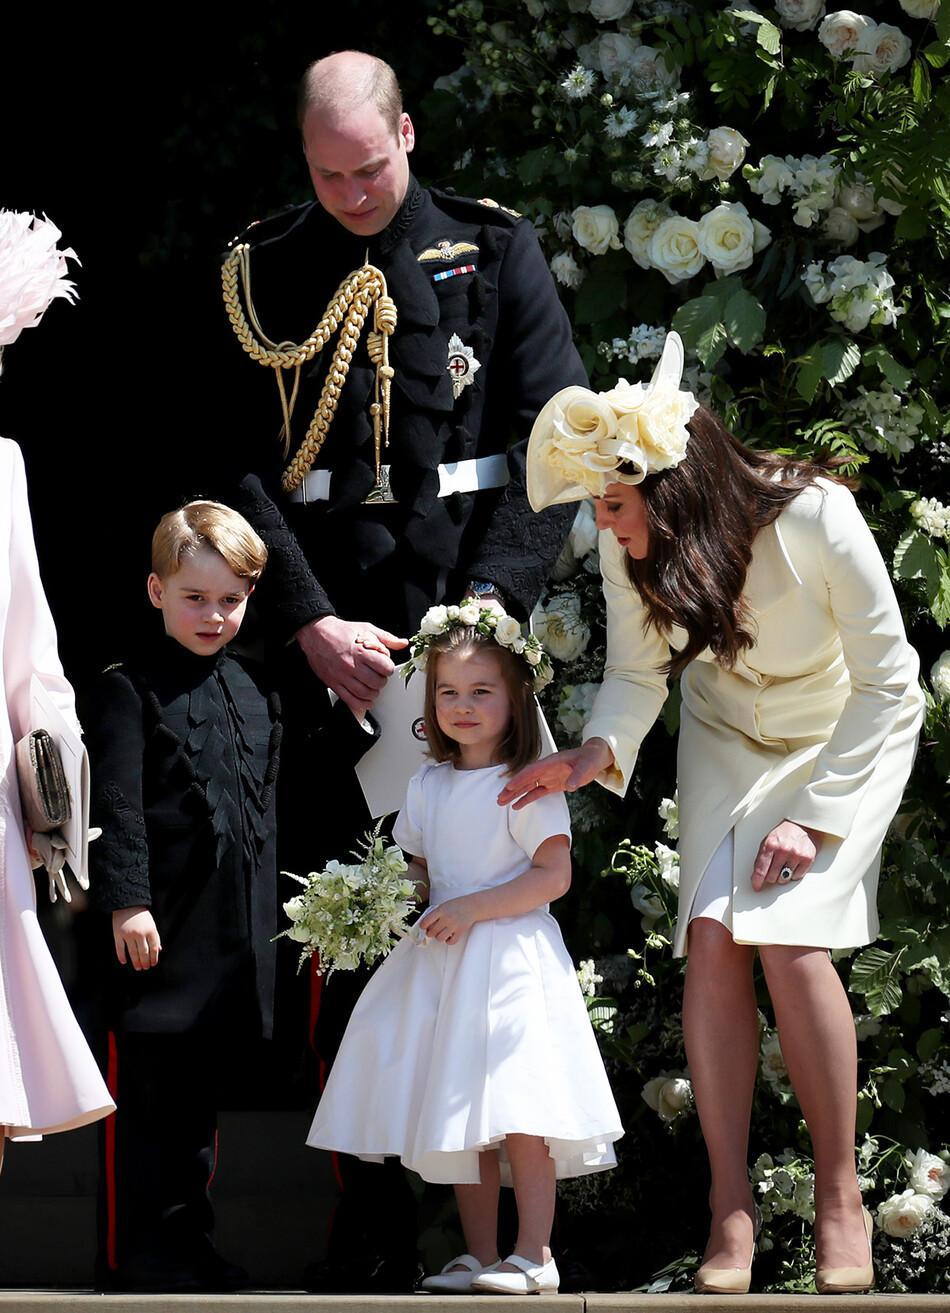 Gринц Джордж Кембриджский, принц Уильям, герцог Кембриджский, принцесса Шарлотта Кембриджская и Кэтрин, герцогиня Кембриджская после свадьбы принца Гарри и мисс Меган Маркл в часовне Святого Георгия в Виндзорском замке в мае 19 августа 2018 года в Виндзоре, Англия